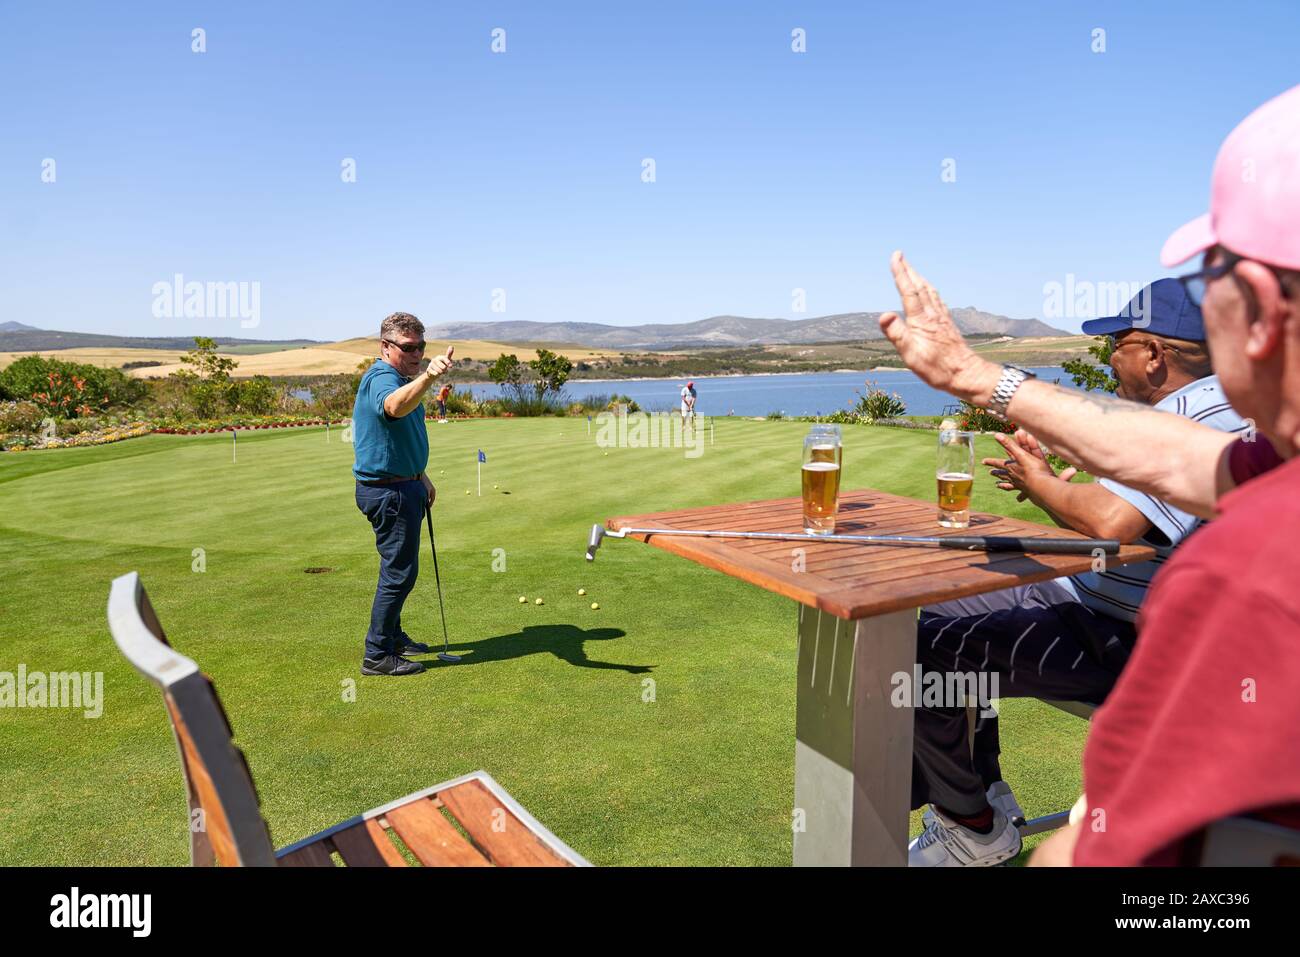 Des amis golfeurs masculins boivent de la bière et pratiquent la mise Banque D'Images